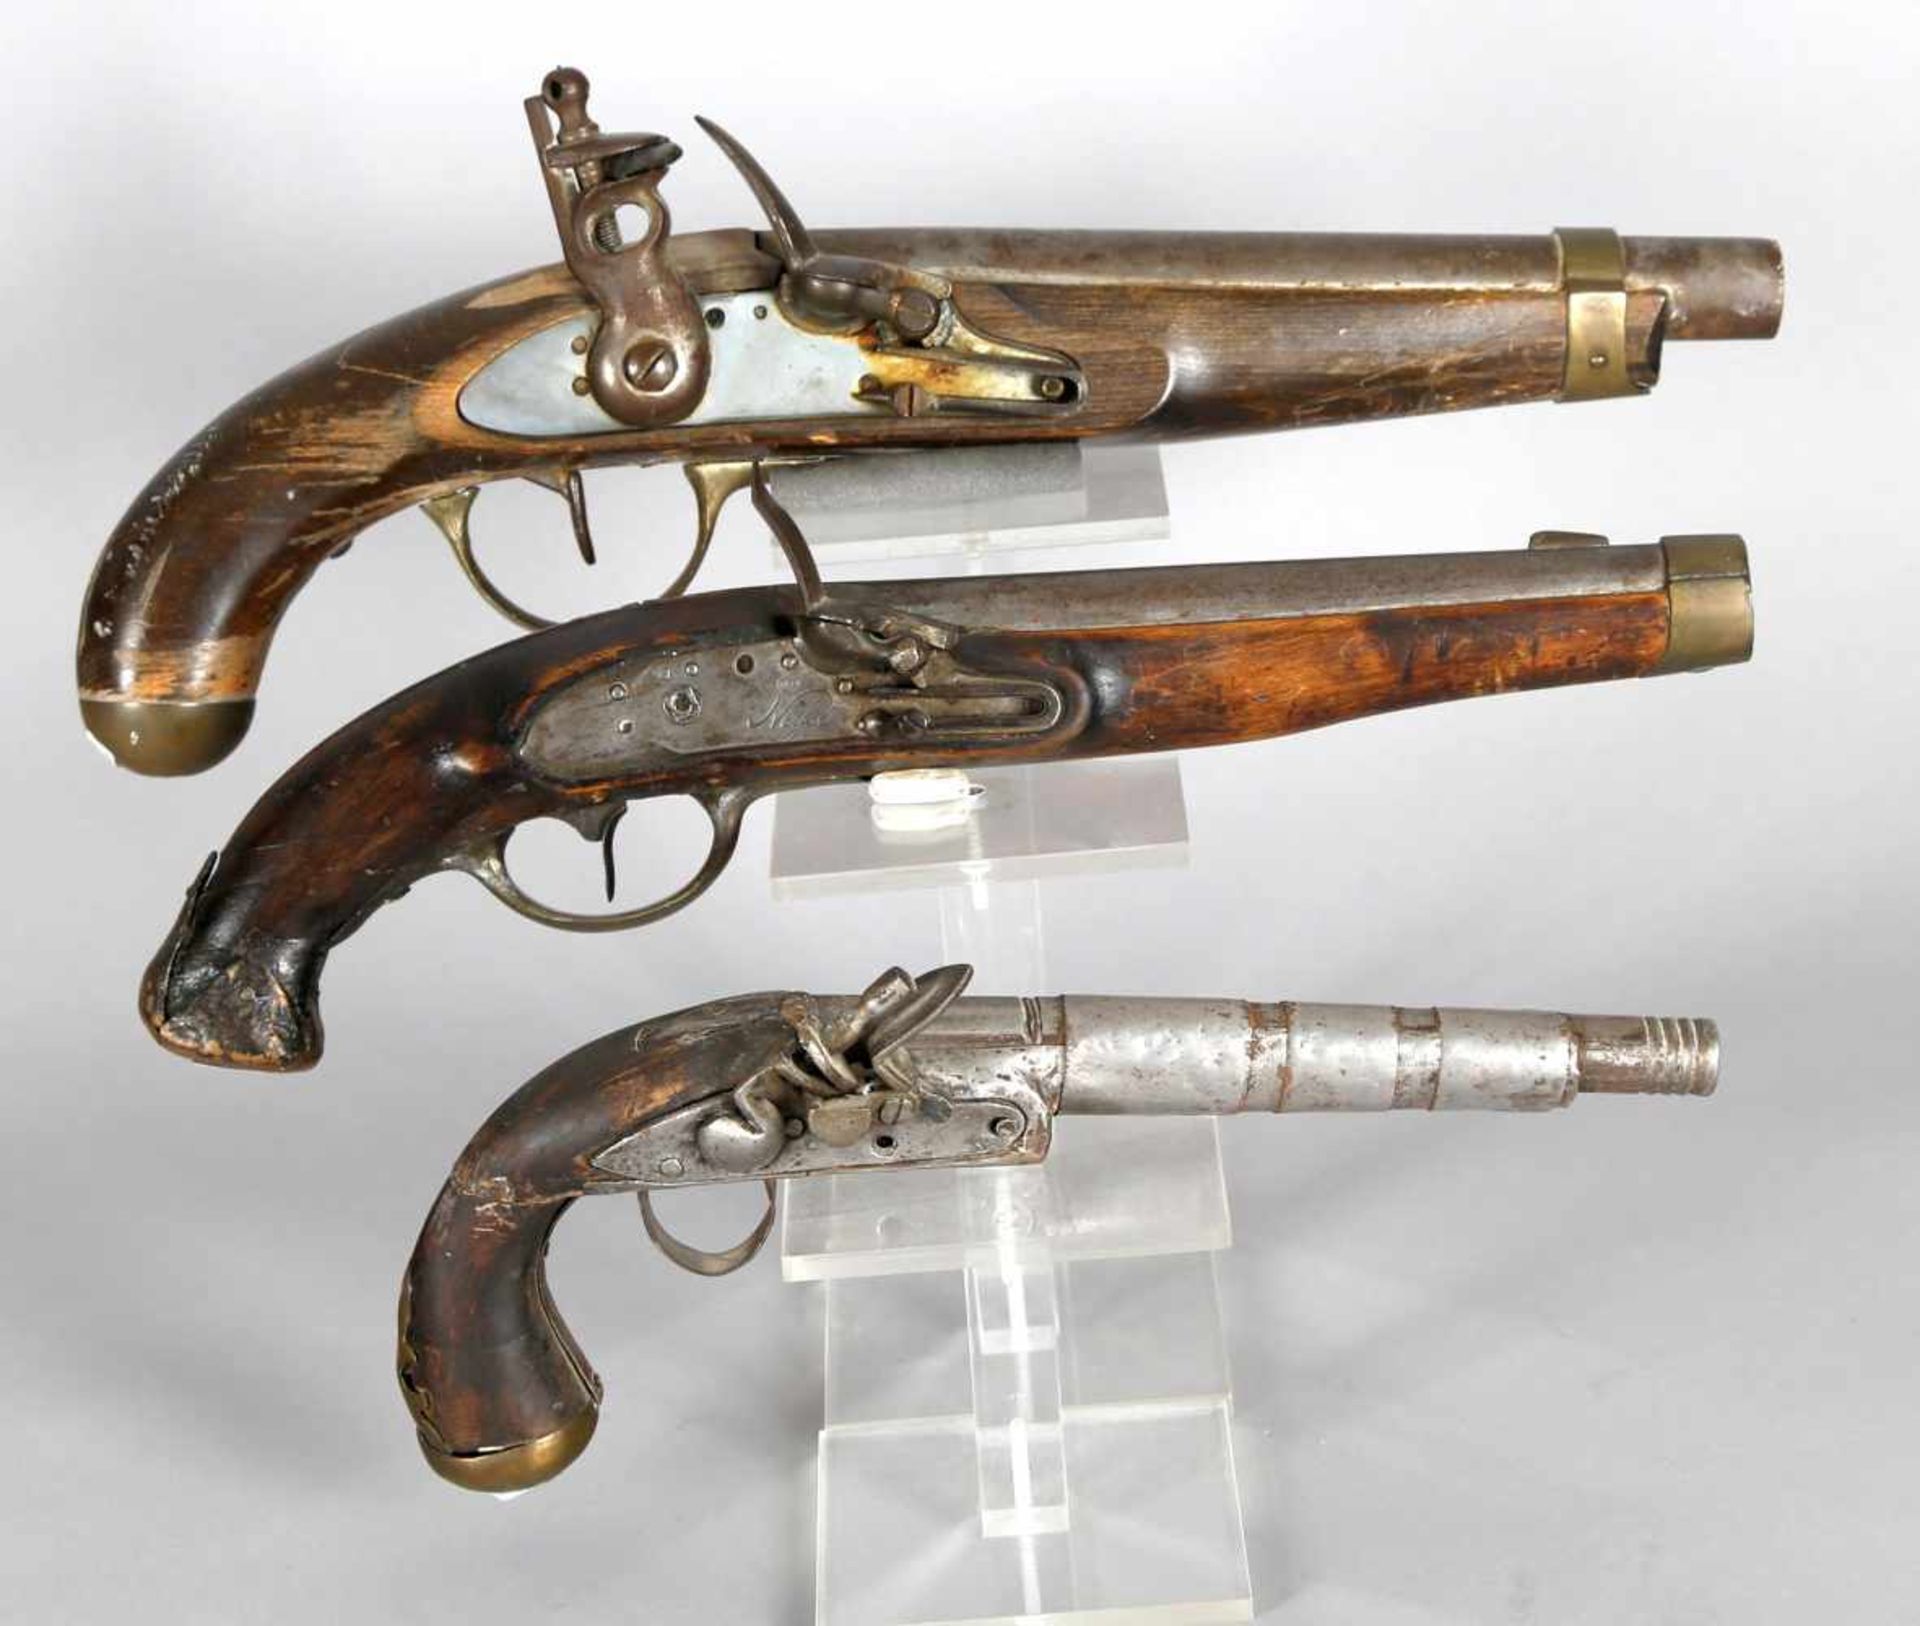 Konvolut aus drei Steinschloss-Pistolen, 19. Jh.1 Exemplar aus England, 2 größere und 1 kleinere